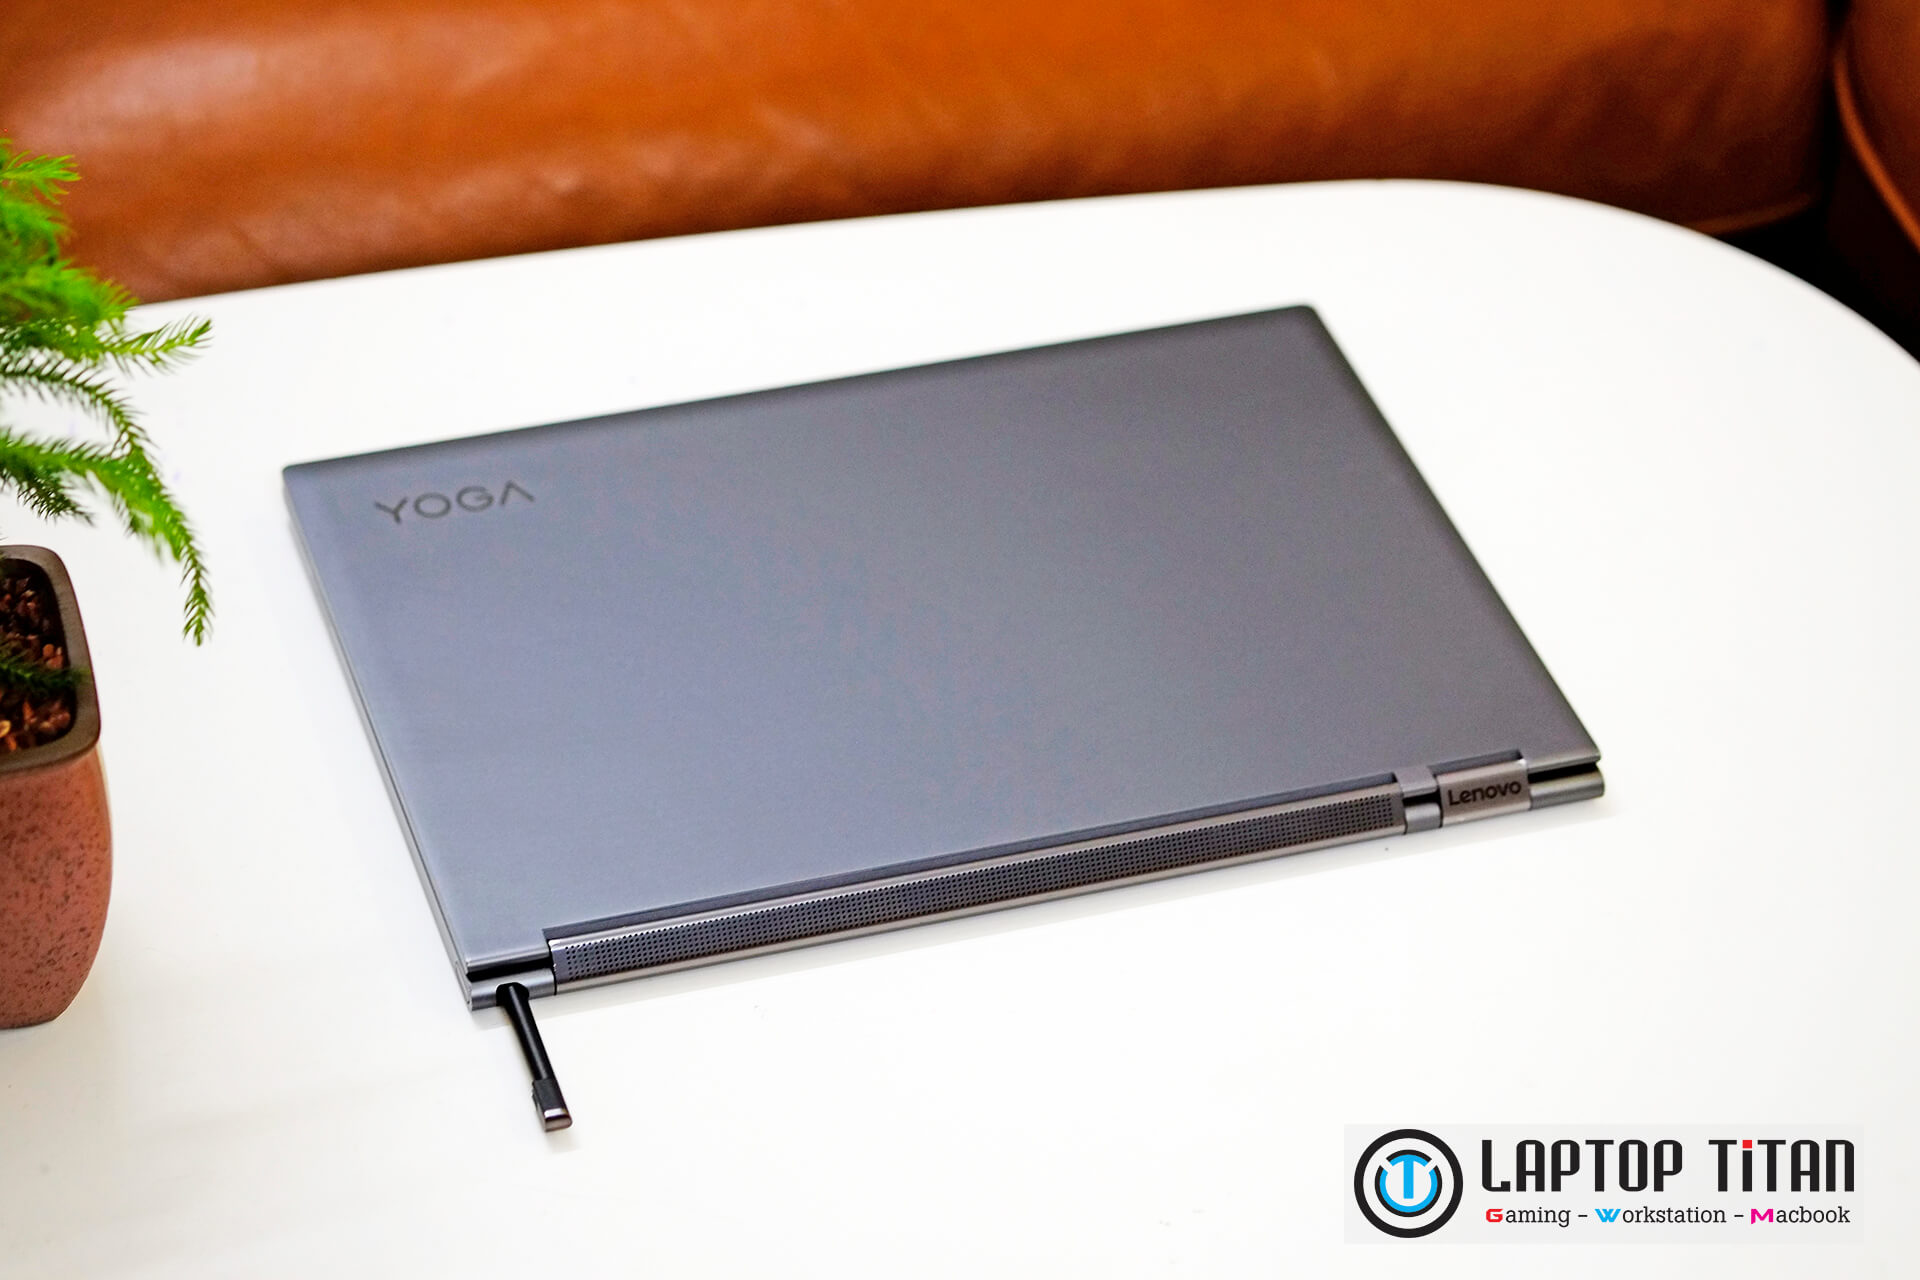 Lenovo Yoga C930 Laptoptitan 07